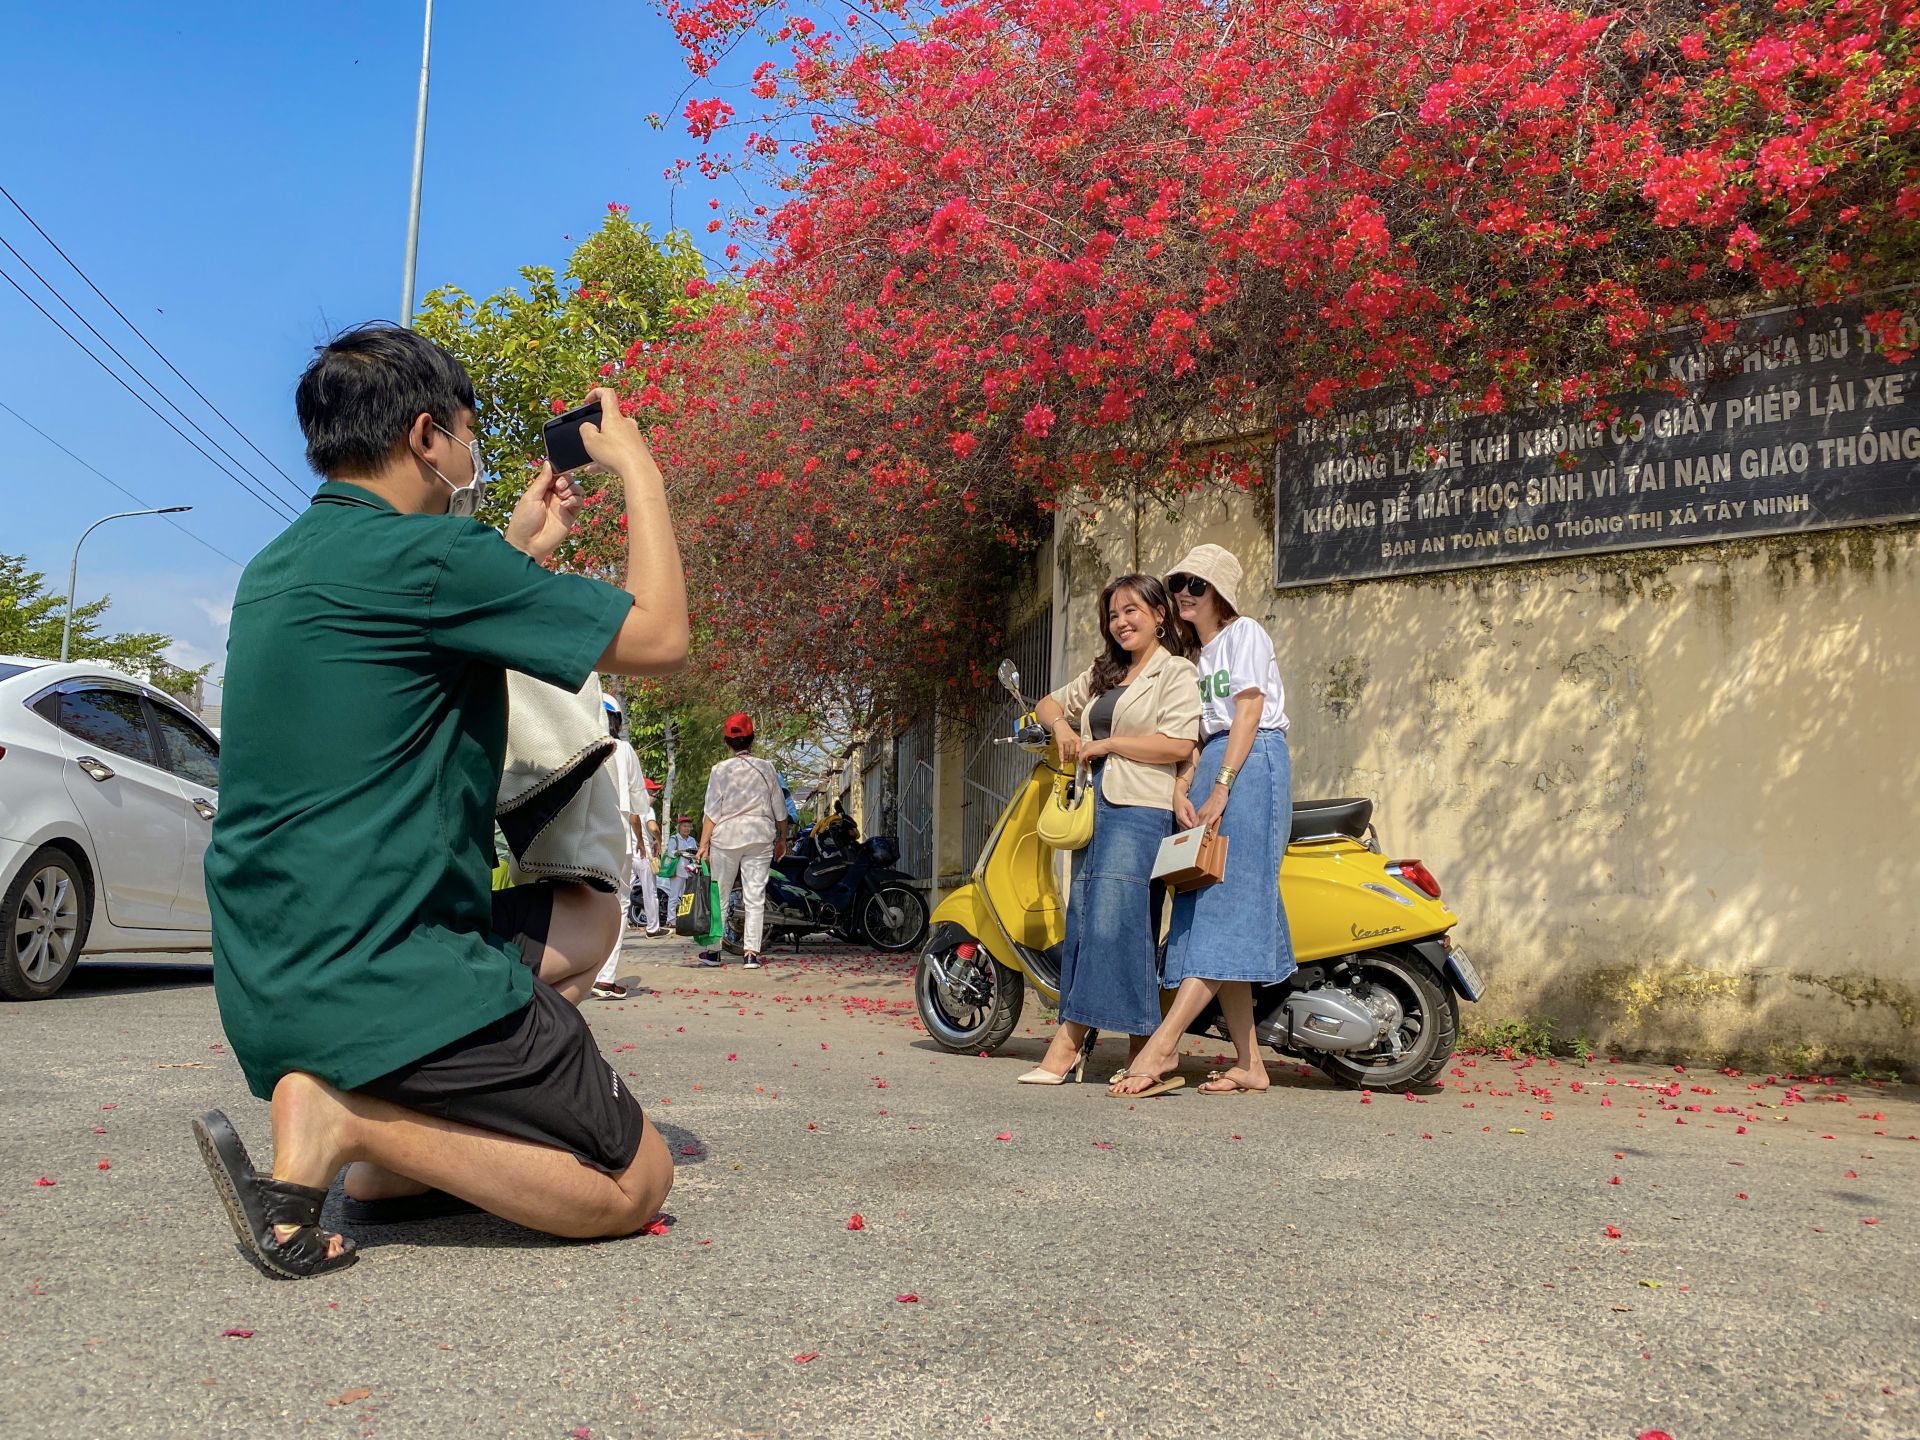 Một giàn hoa giấy tuôn bông đỏ không kịp cản đang xôn xao ở Tây Ninh, nhiều người đến chụp ảnh, ngắm say mê - Ảnh 10.